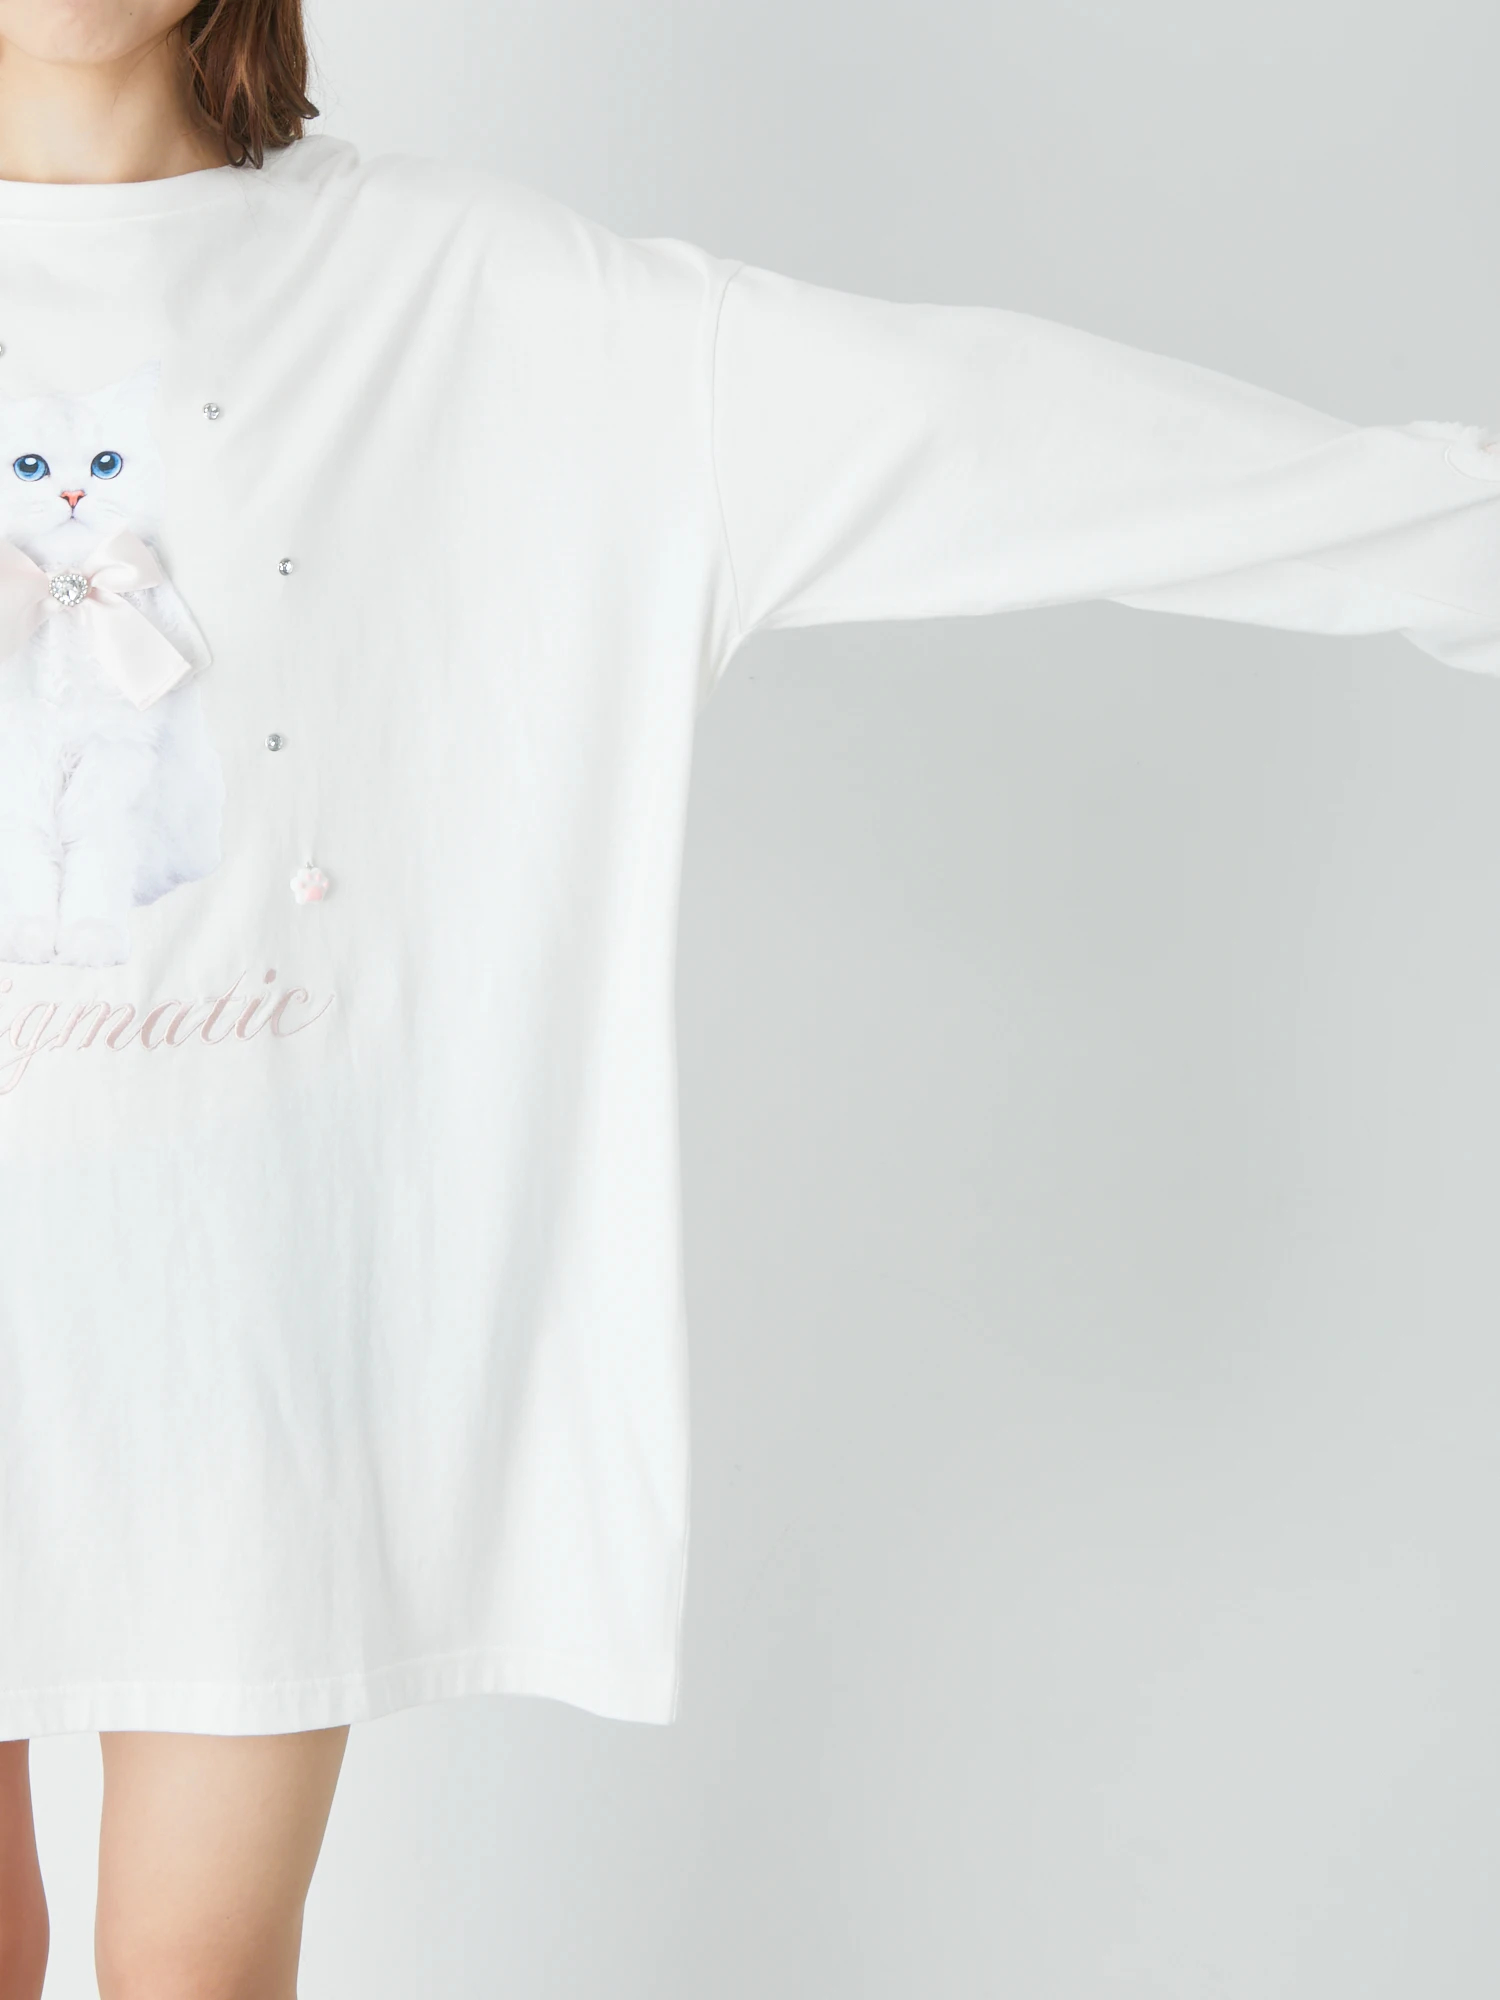 ねこちゃんロンTe - Ank Rouge(アンクルージュ)のTシャツ・カットソー 